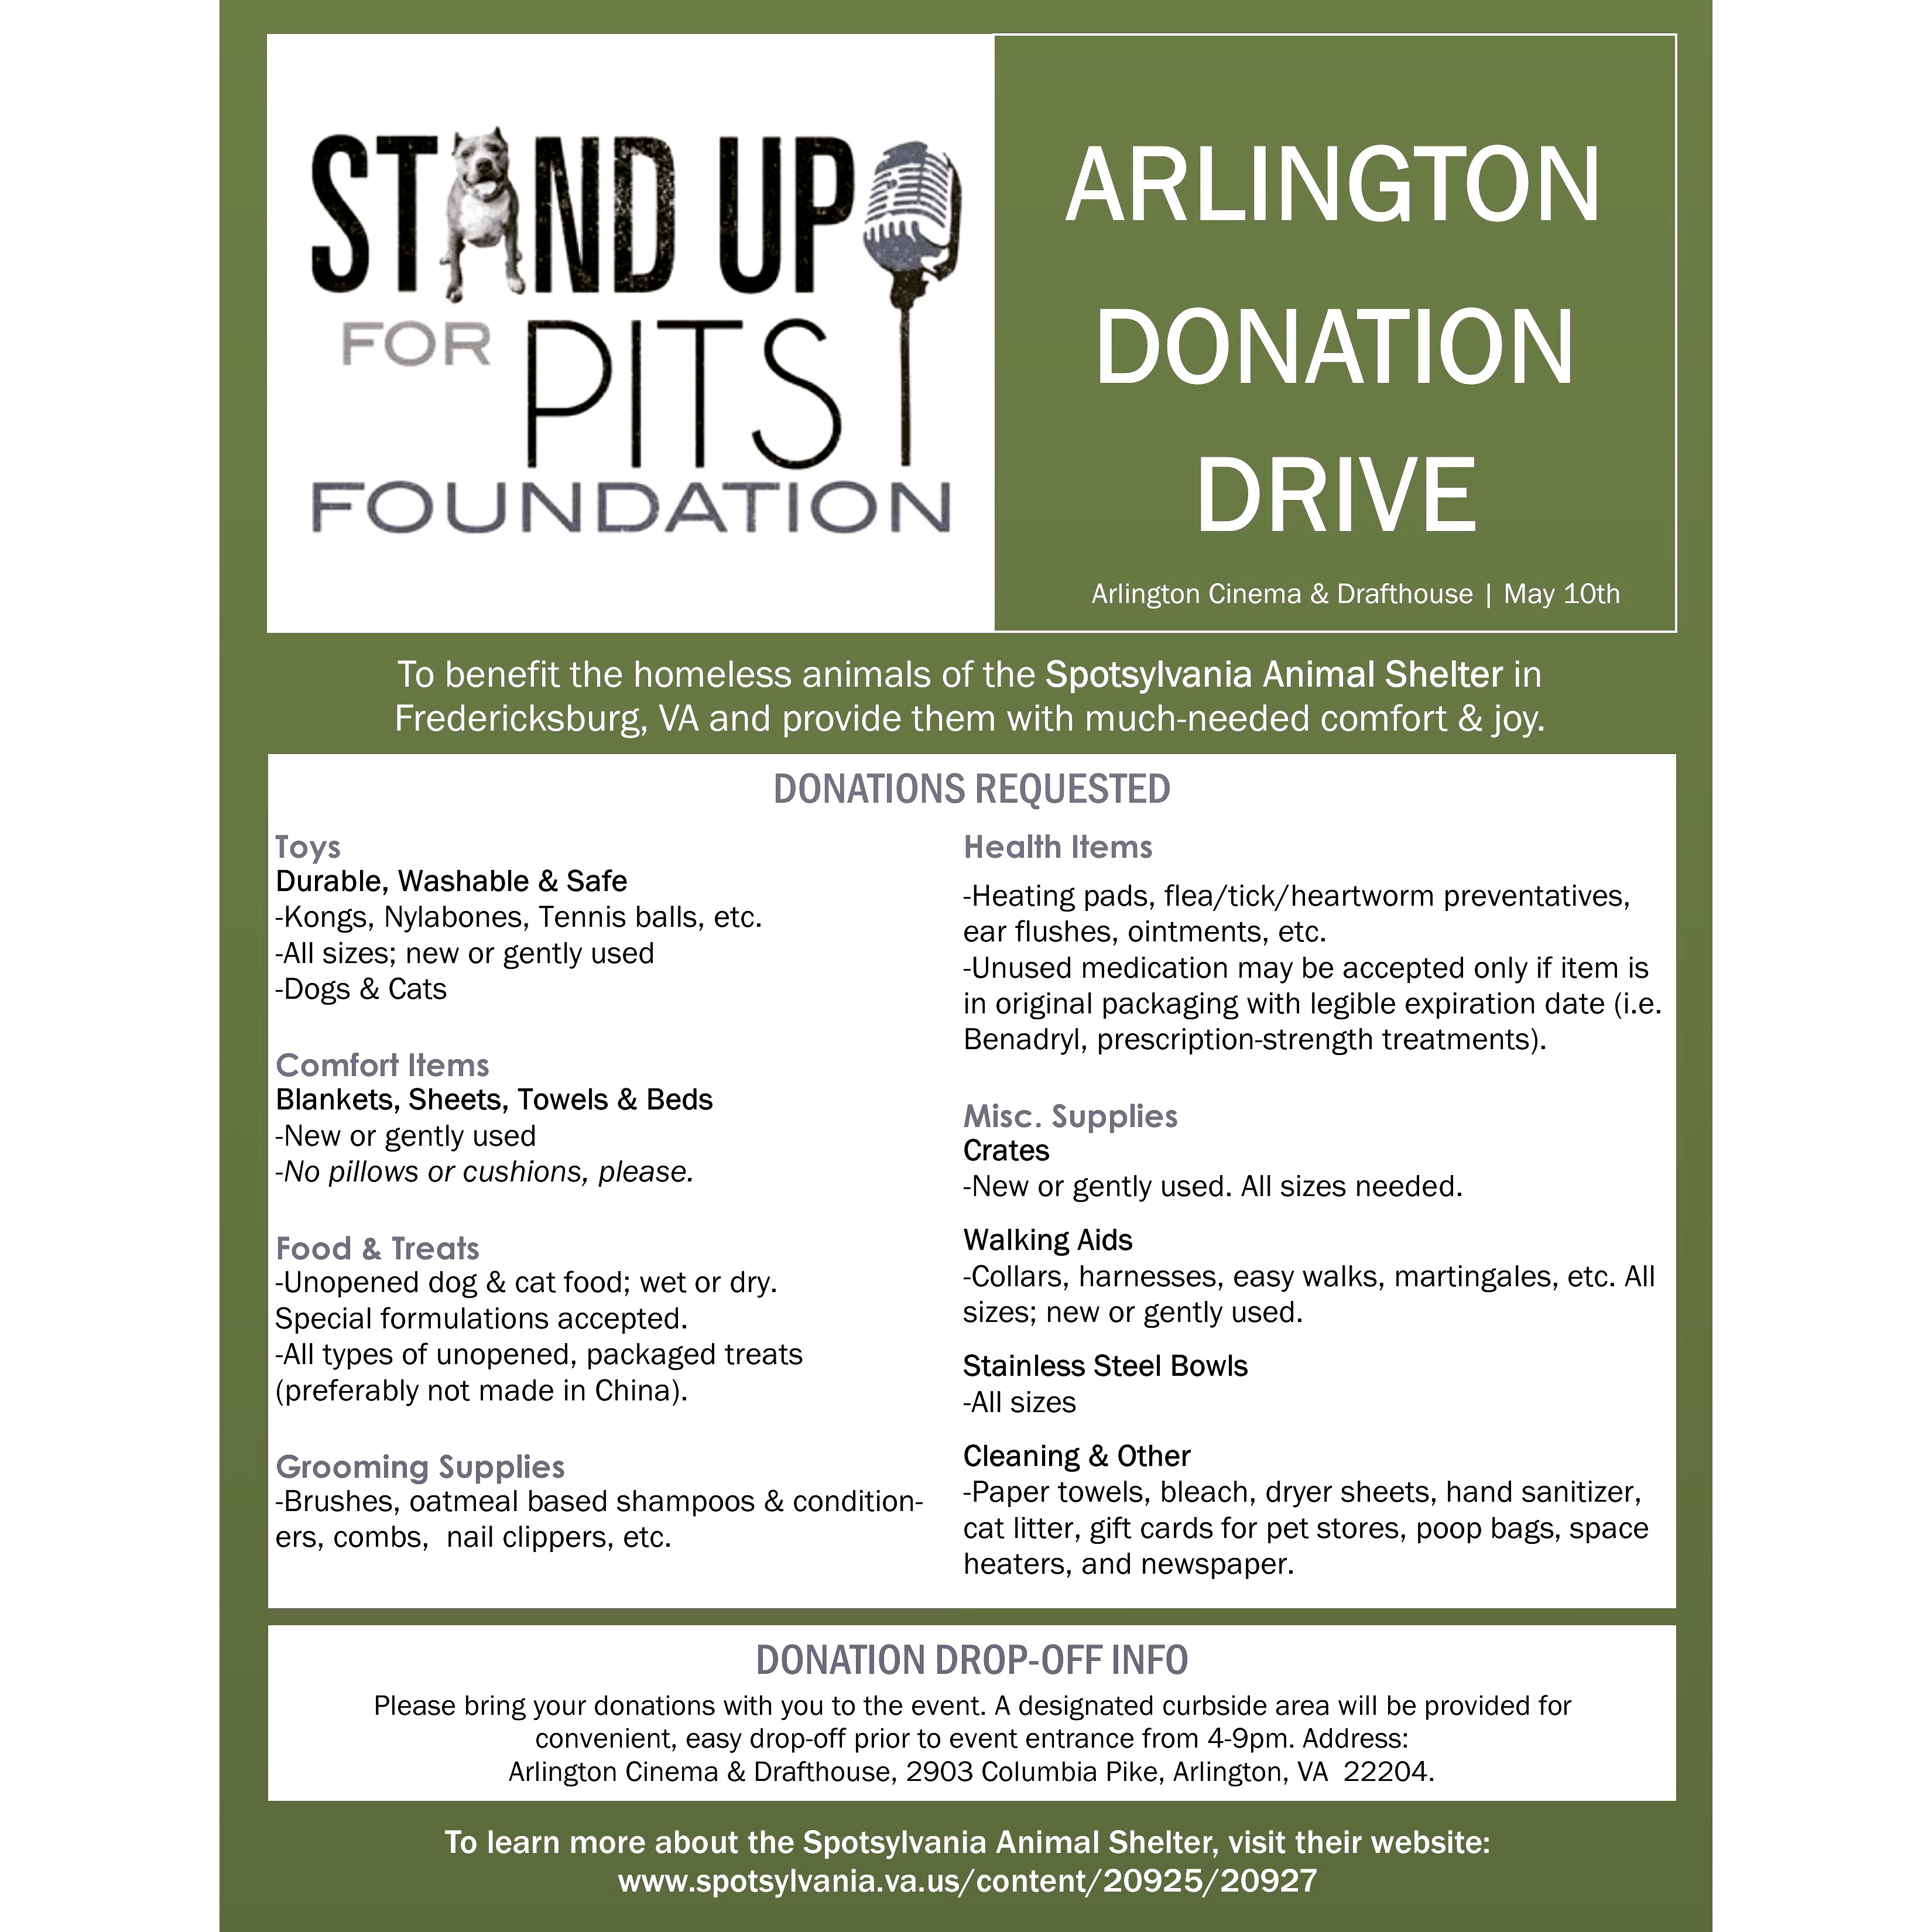 sufp announces Arlington VA donation drive!